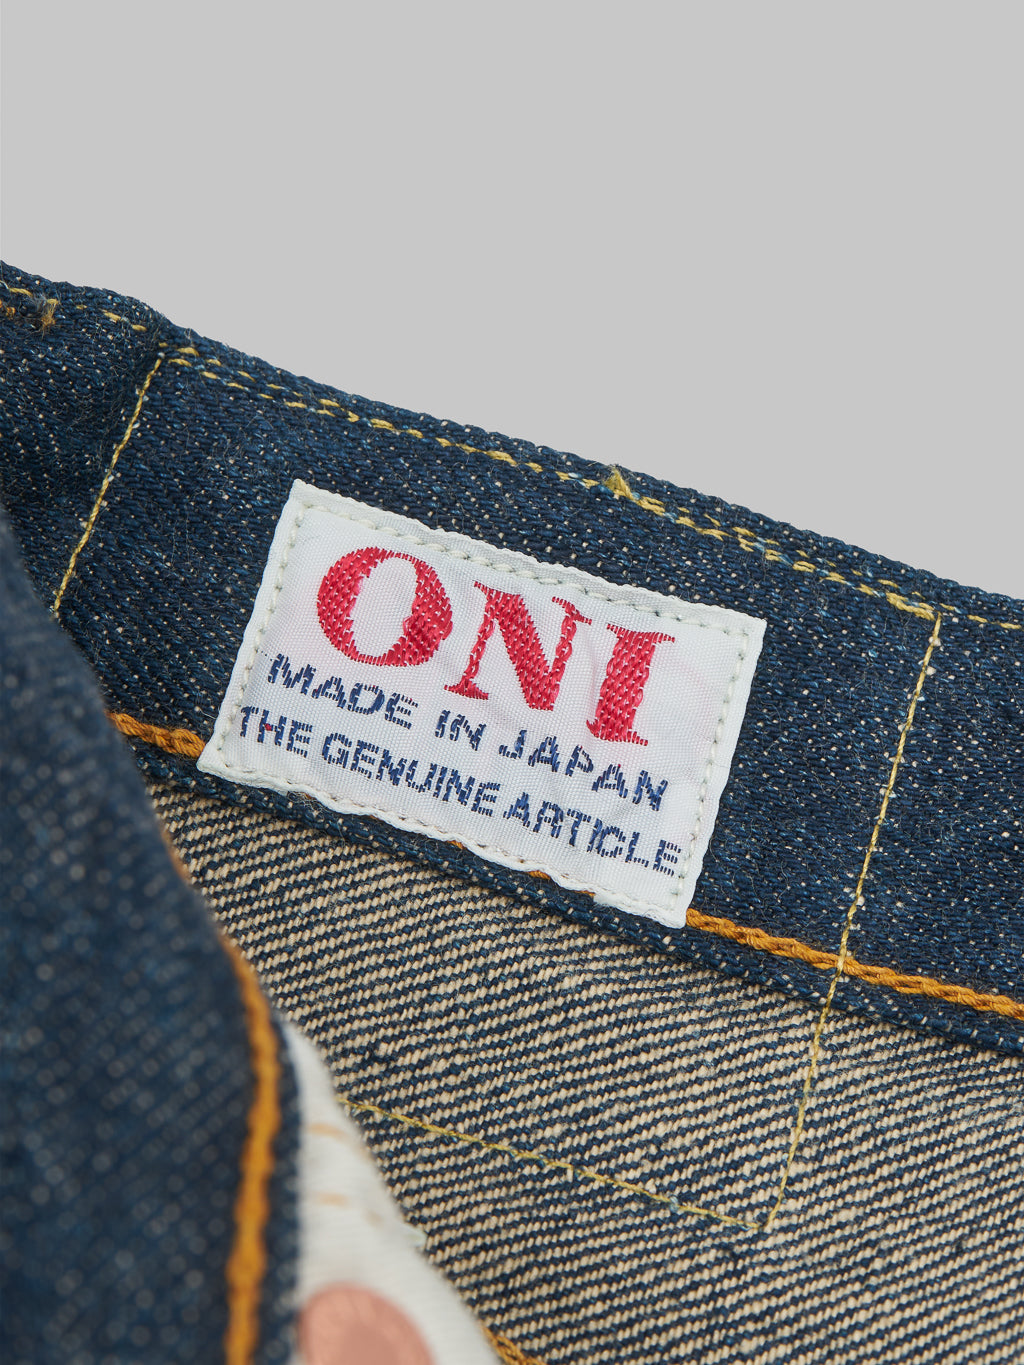 ONI Denim 622 Ishikawadai 15oz Relaxed Tapered Jeans interior label